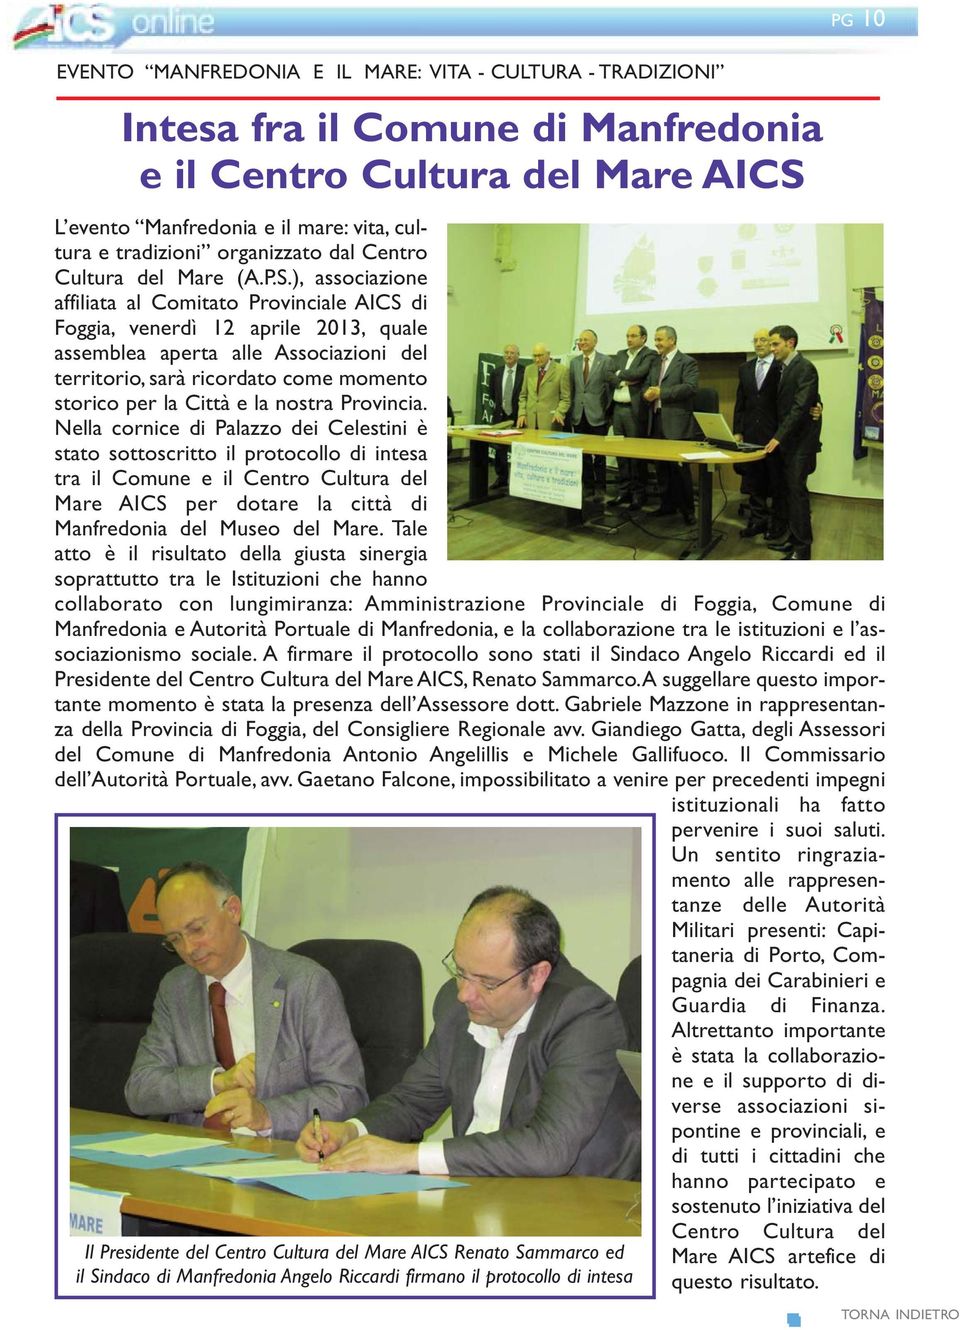 ), associazione affiliata al Comitato Provinciale AICS di Foggia, venerdì 12 aprile 2013, quale assemblea aperta alle Associazioni del territorio, sarà ricordato come momento storico per la Città e